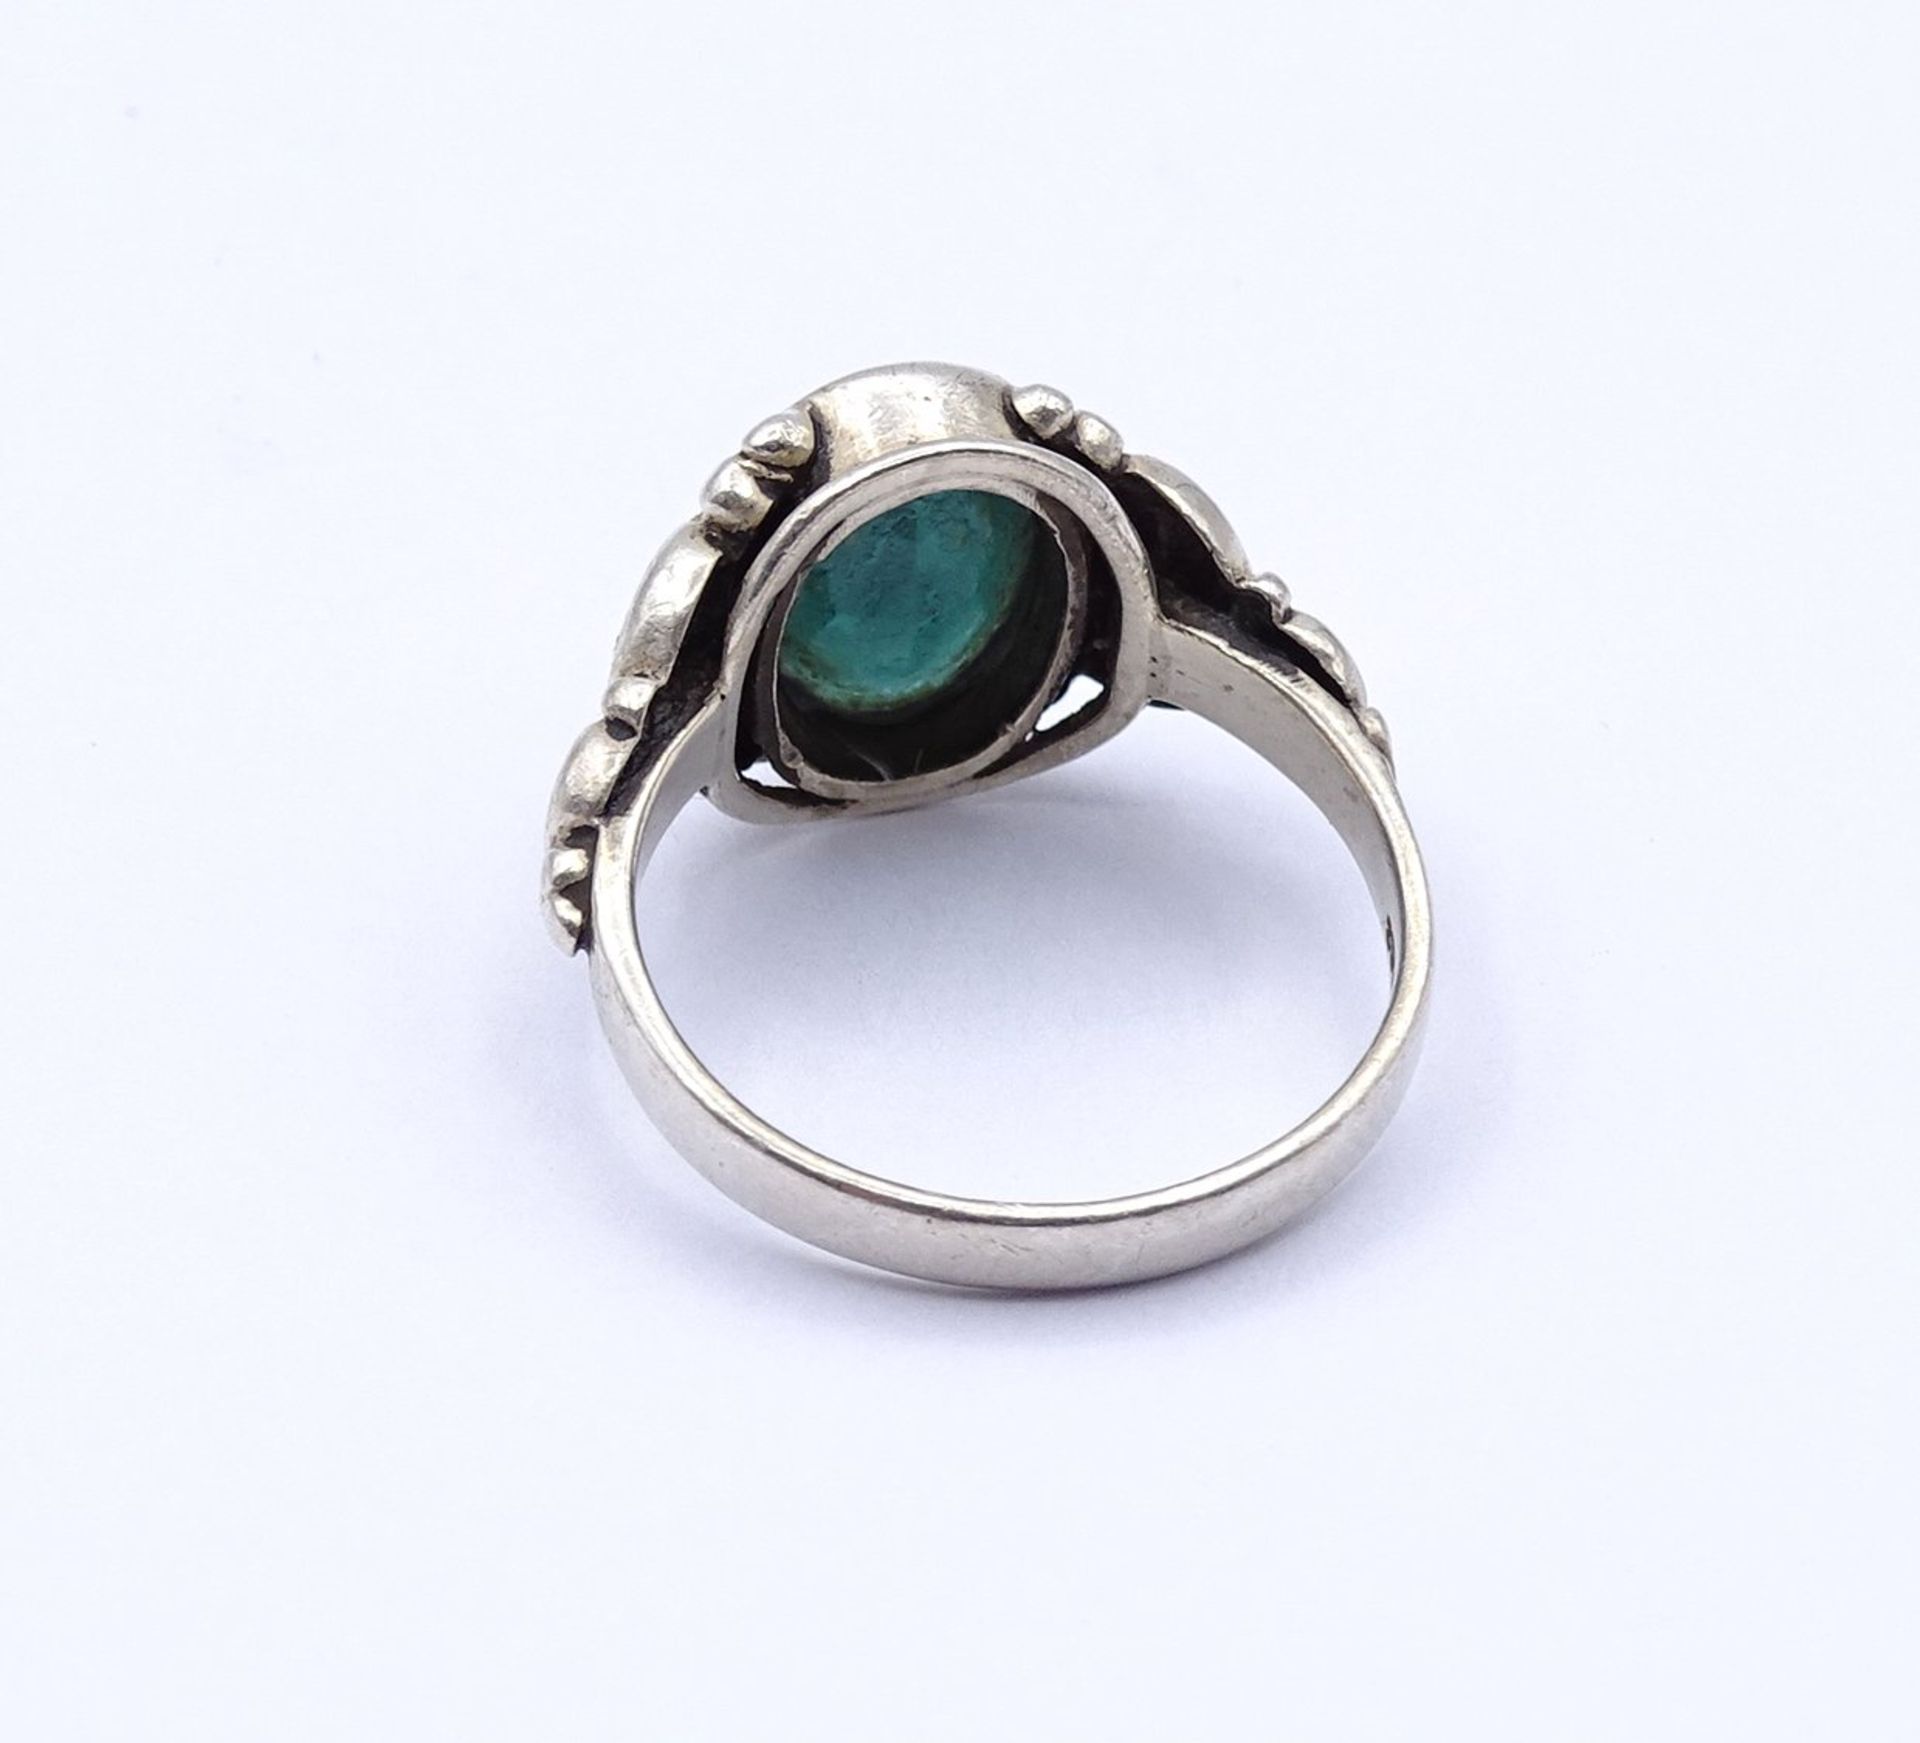 835er Silberring mit einem grünen Stein, 3,8g., RG 56,5, Tragespuren - Image 3 of 3